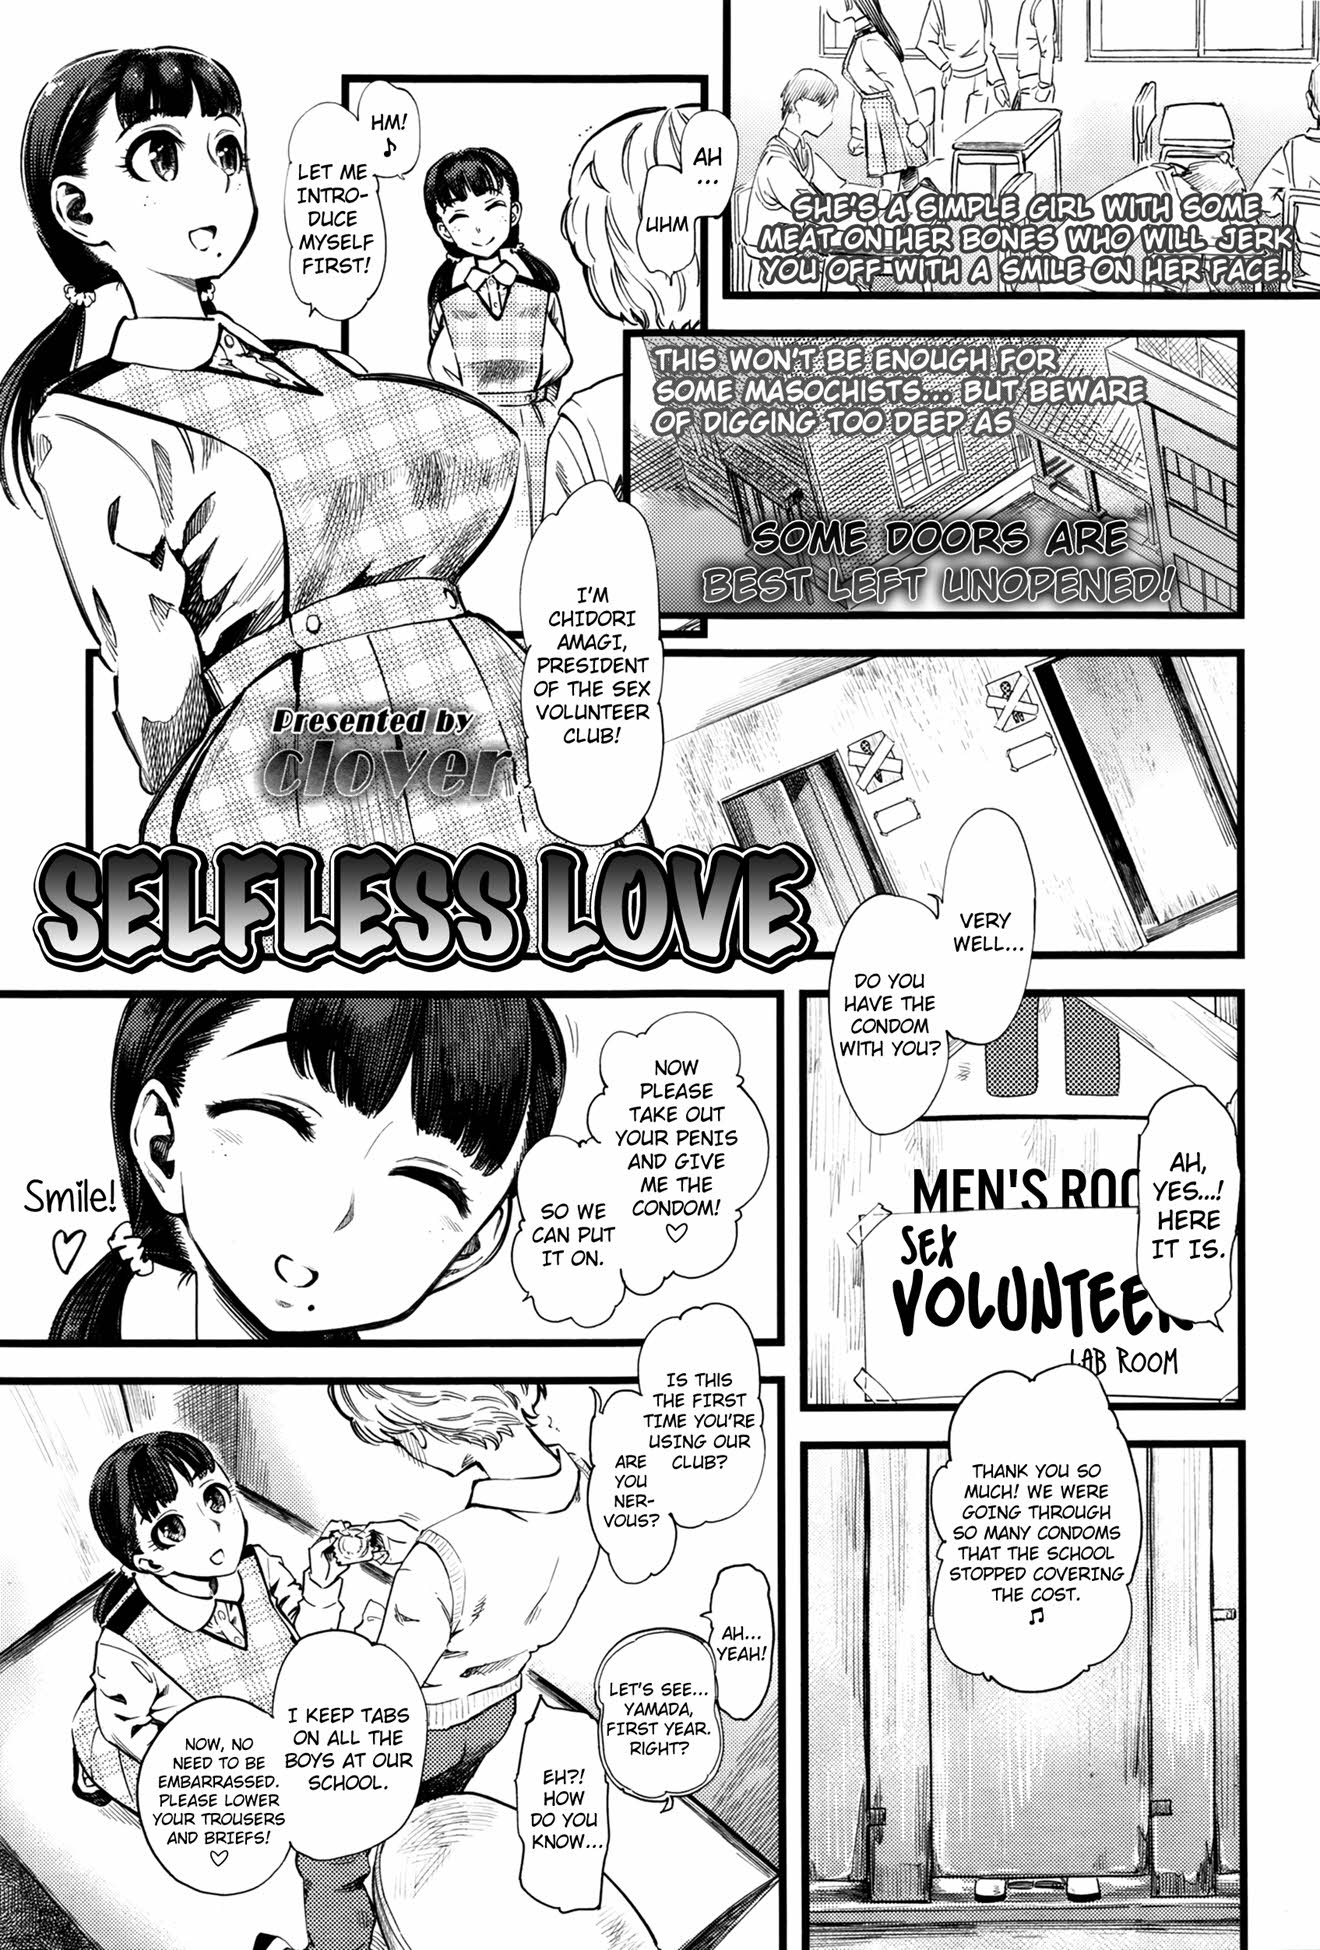 [Clover] Mushou no Ai - Selfless Love Hentai Comic